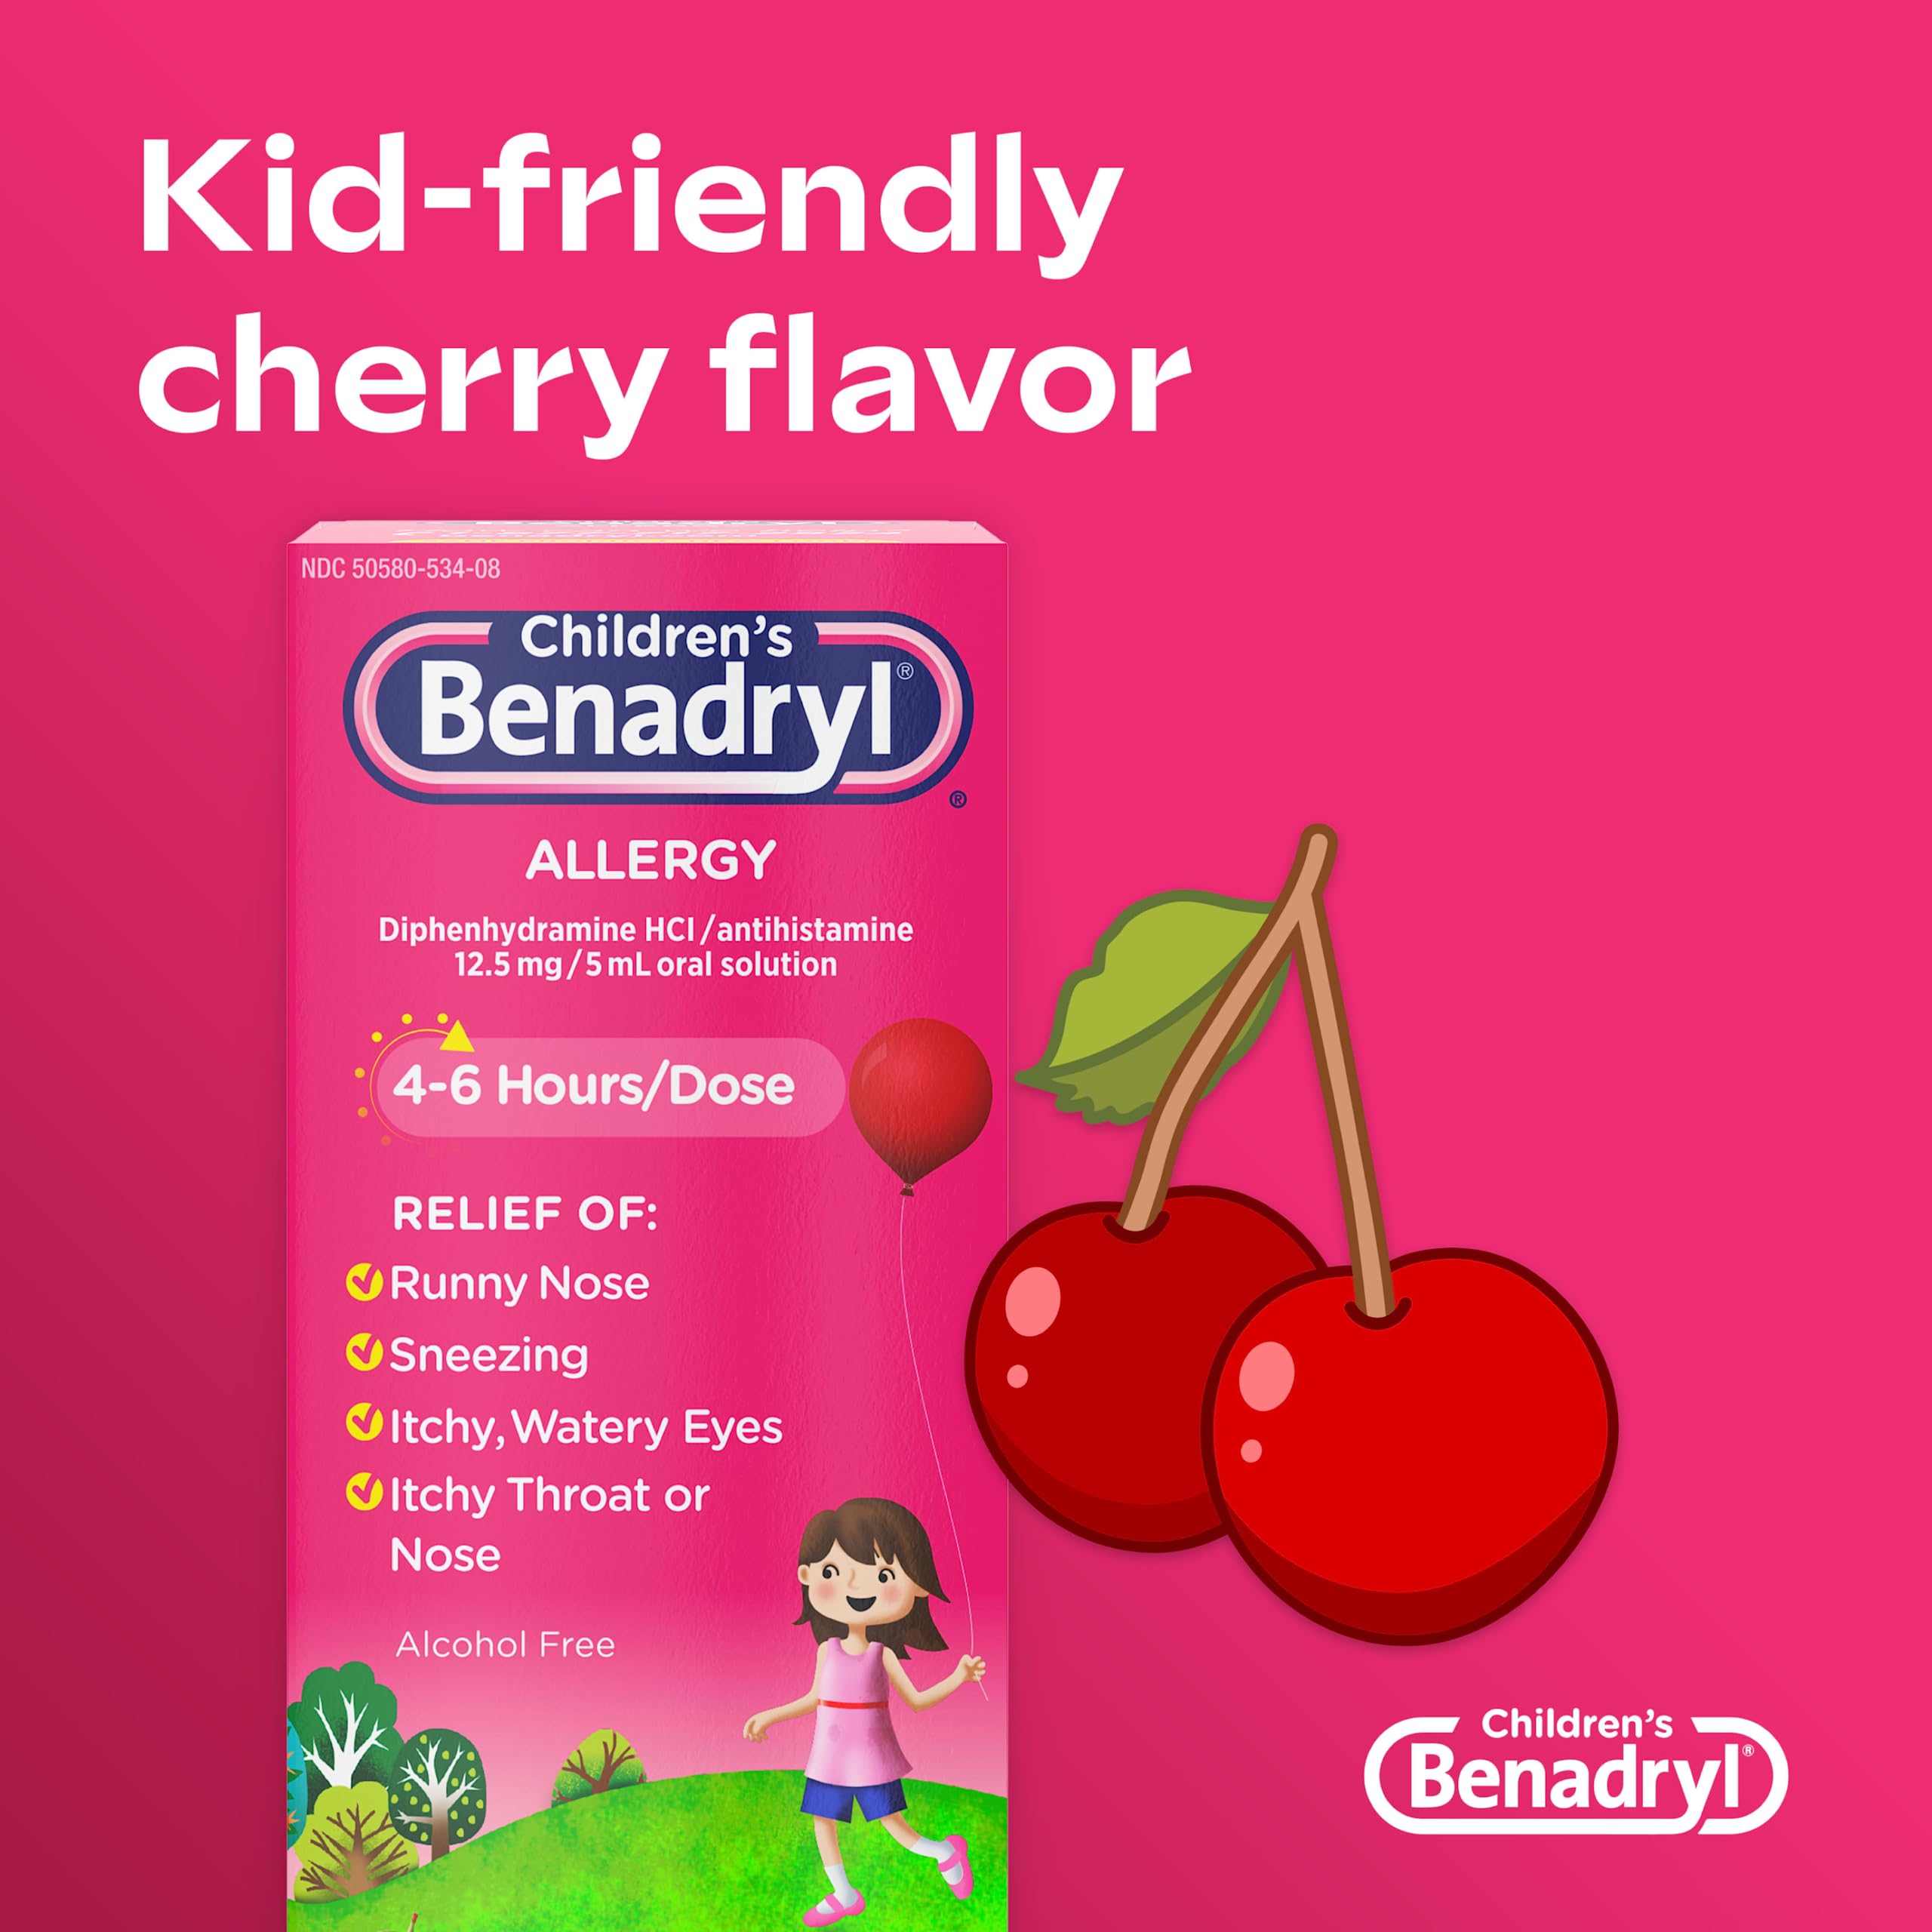 Benadryl Children's Allergy Relief Liquid Medicine with Diphenhydramine HCl Antihistamine for Kids' Allergy Relief, Effective Allergy Relief, Cherry Flavor, 8 fl. oz